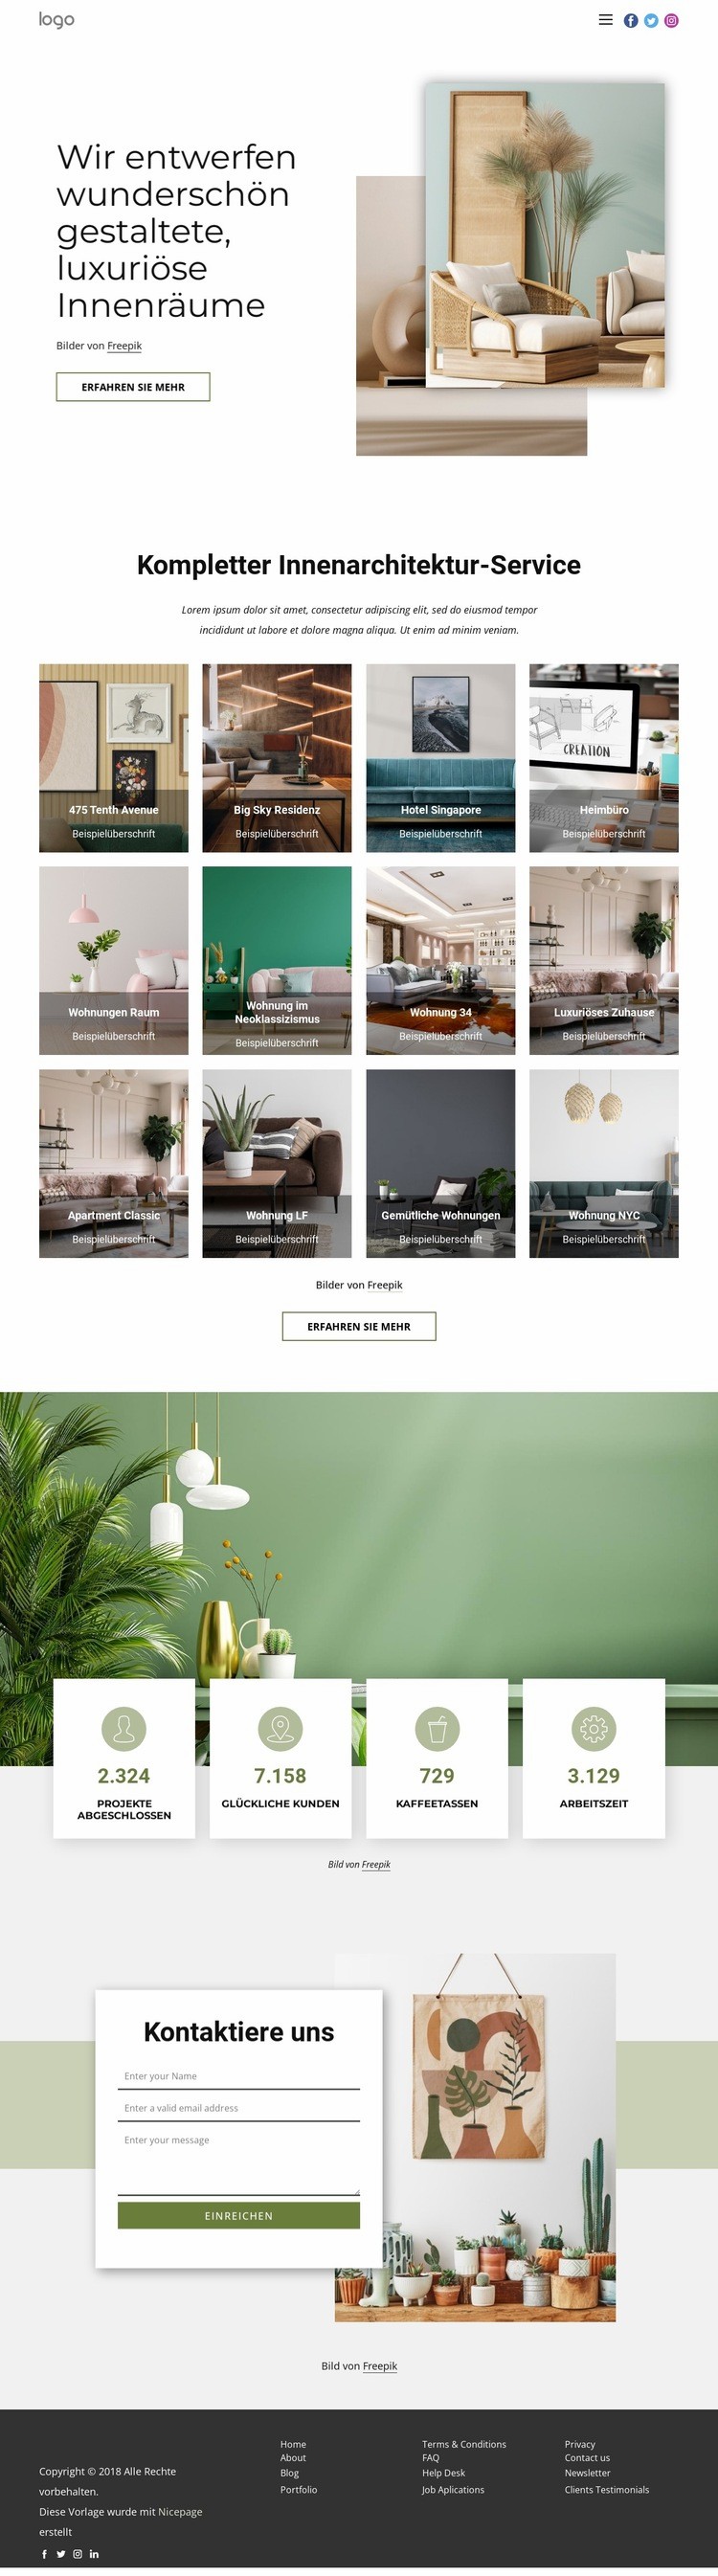 Wir entwerfen luxuriöse Innenräume Website design